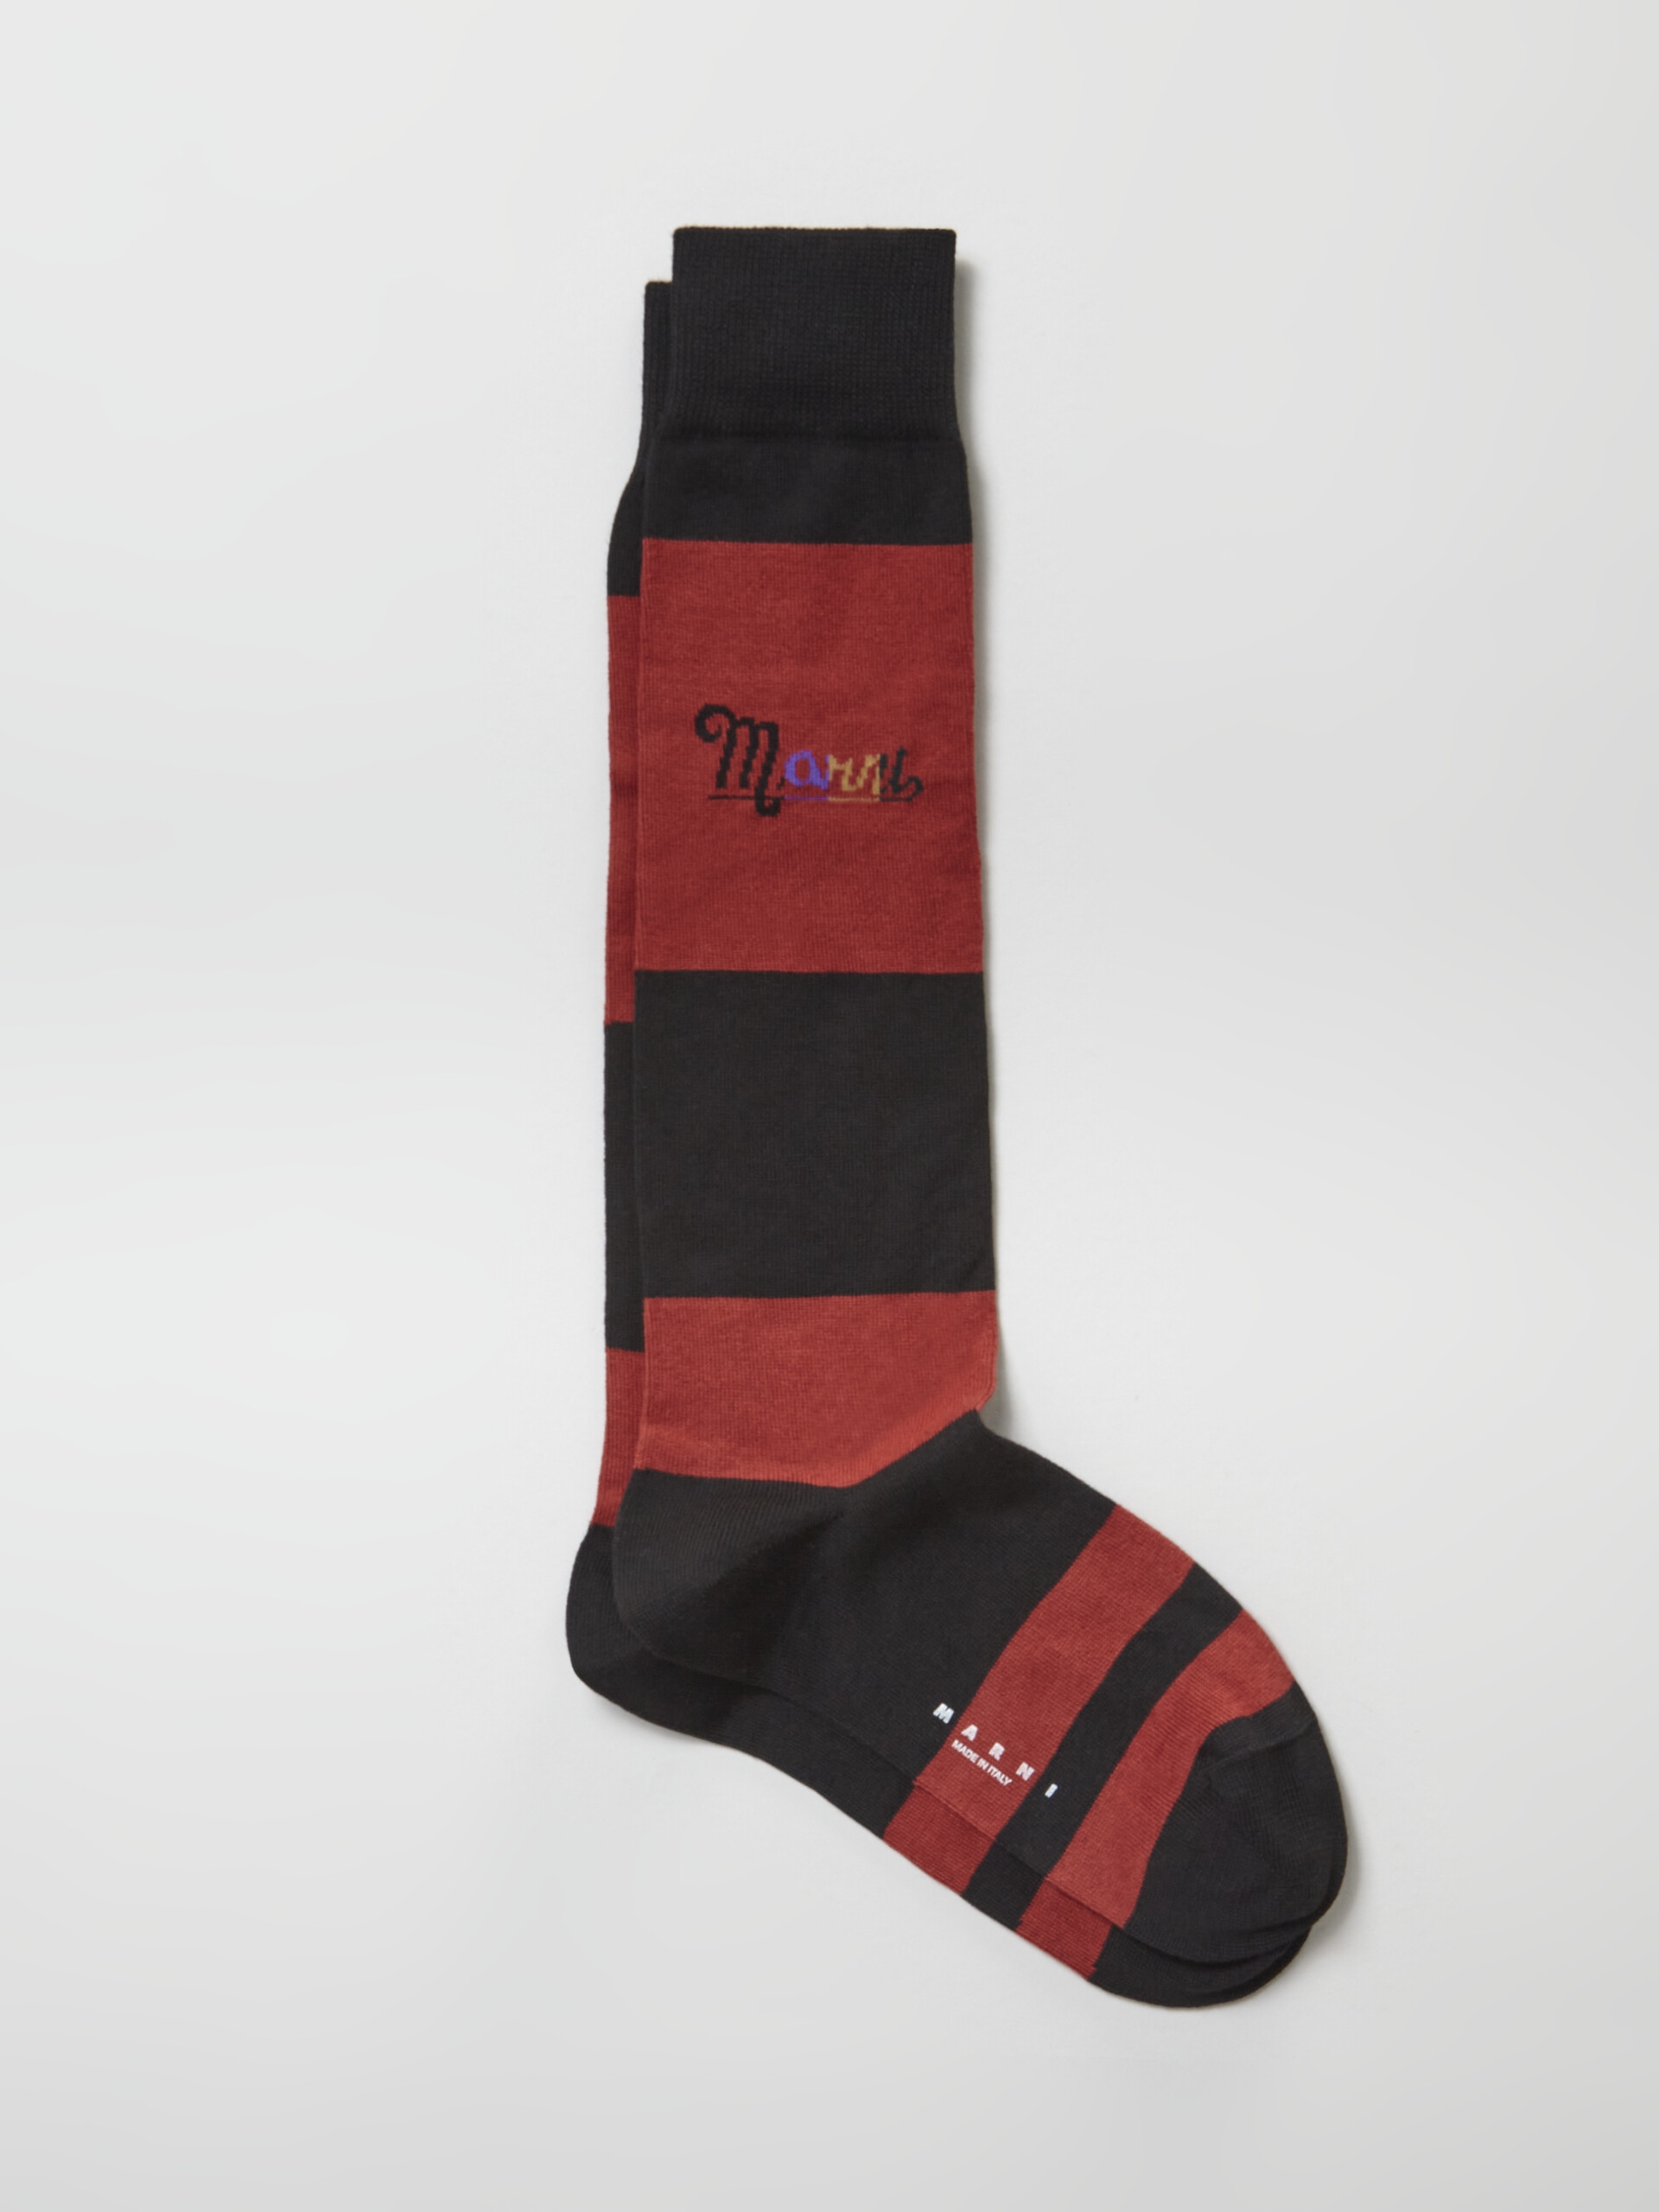 Socke aus schwarz-rot gestreiftem Nylon mit Regenbogen-Logo-Intarsie - Socken - Image 1